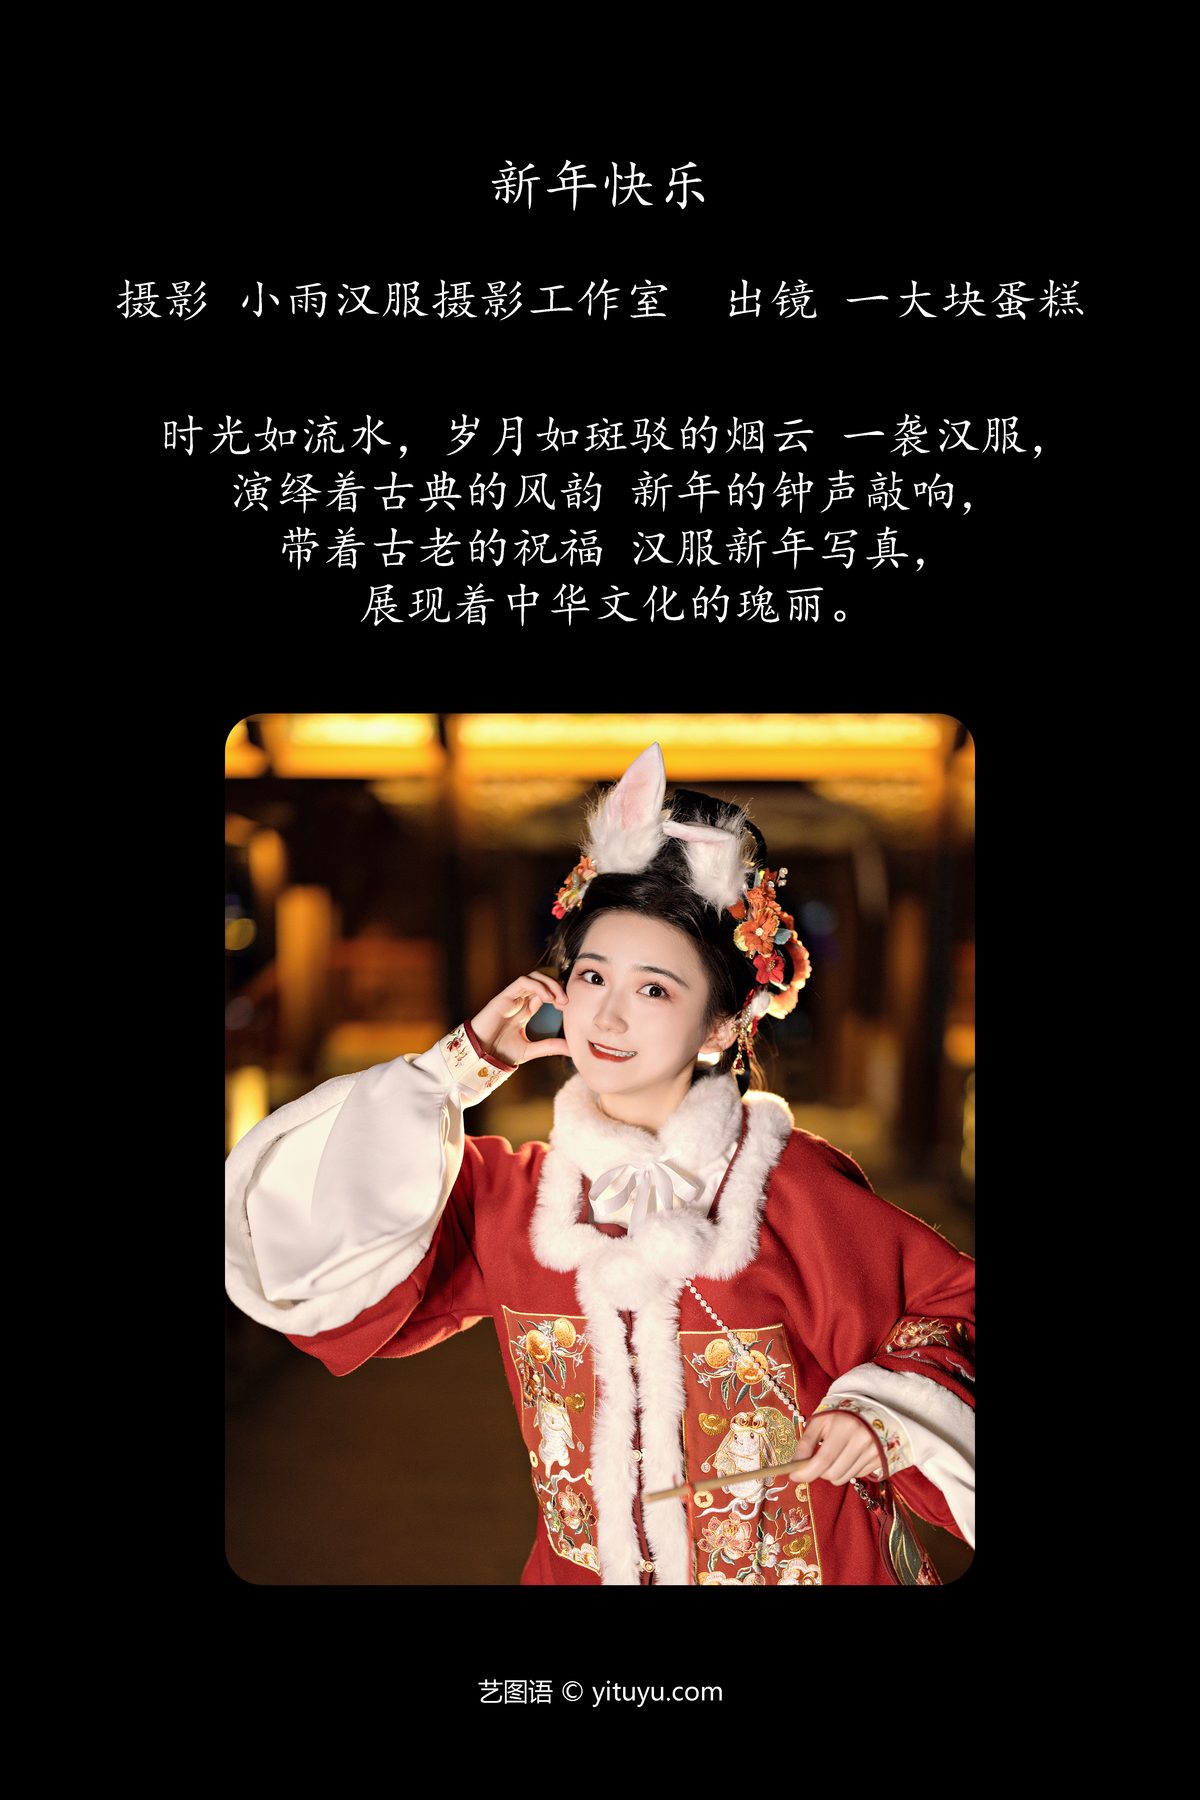 YiTuYu艺图语 Vol 6182 Yi Da Kuai Dan Gao 0002 6170163130.jpg